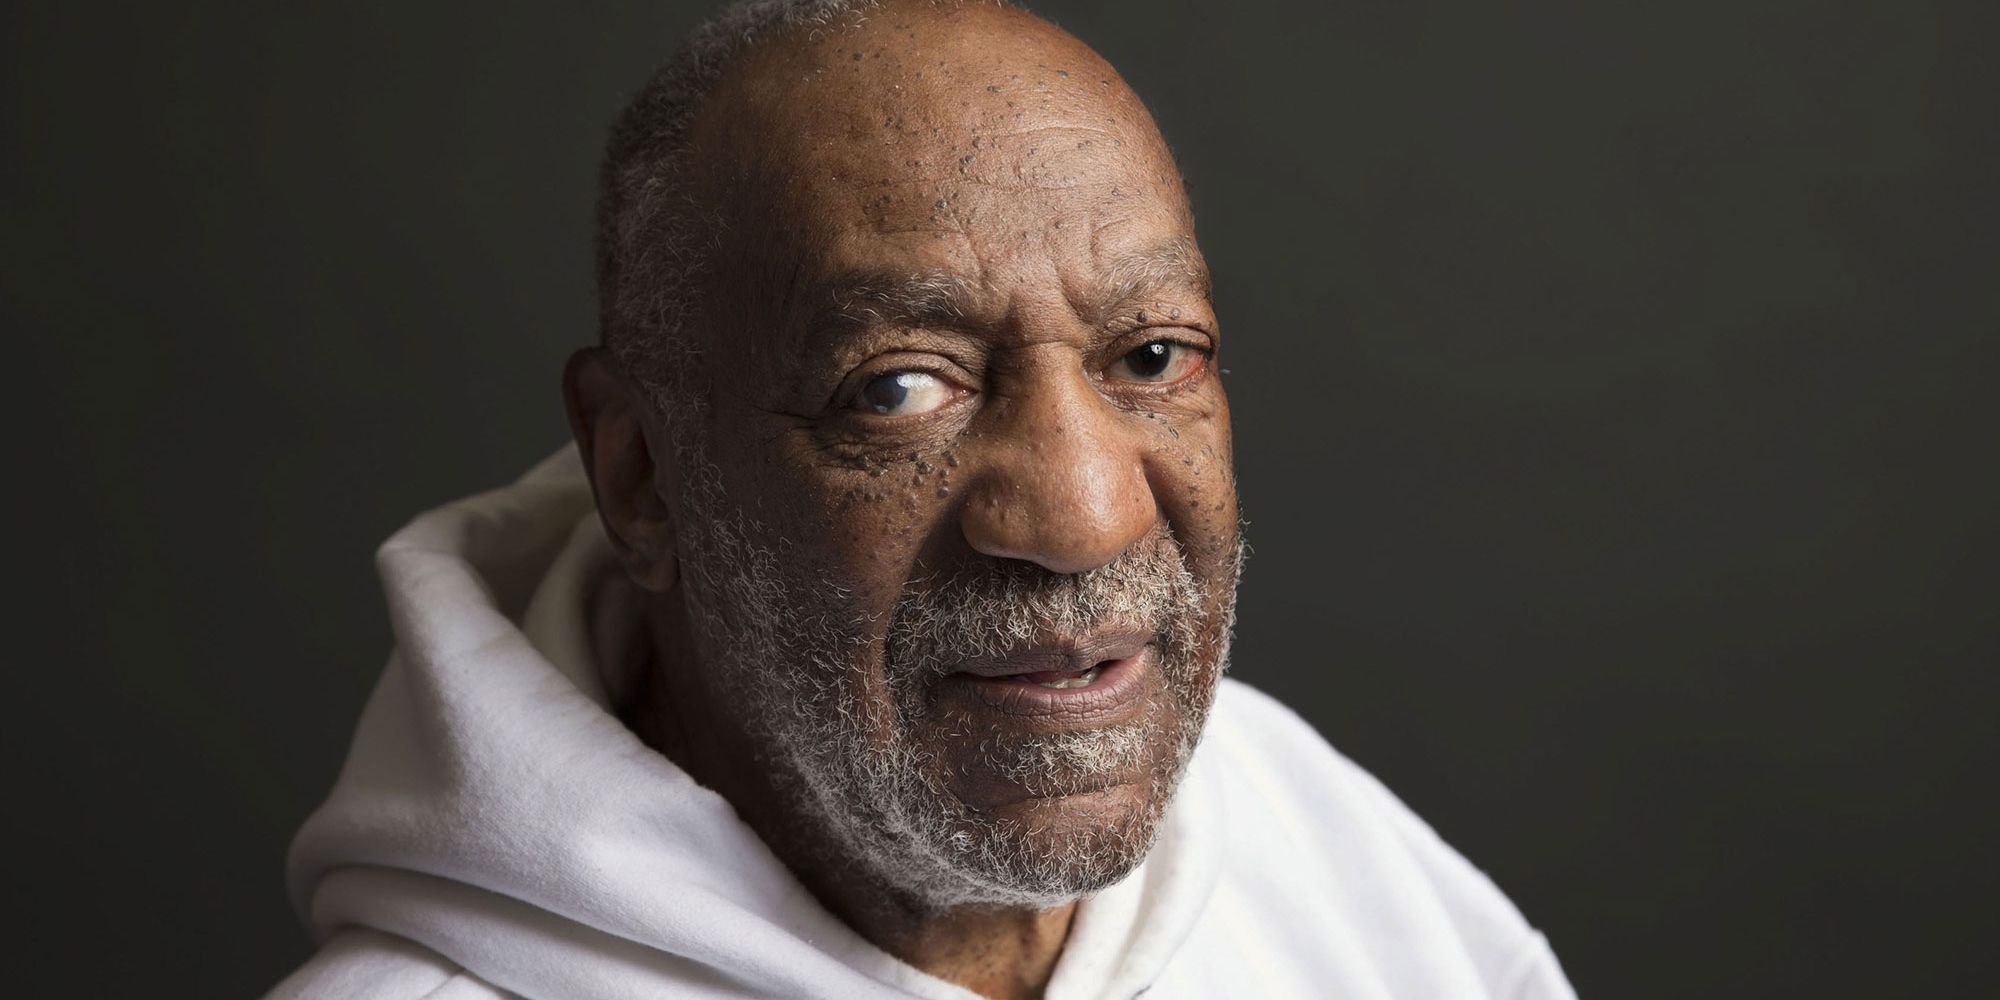 Bill Cosby liberado de la prisión después de que se anulara la condena por agresión sexual